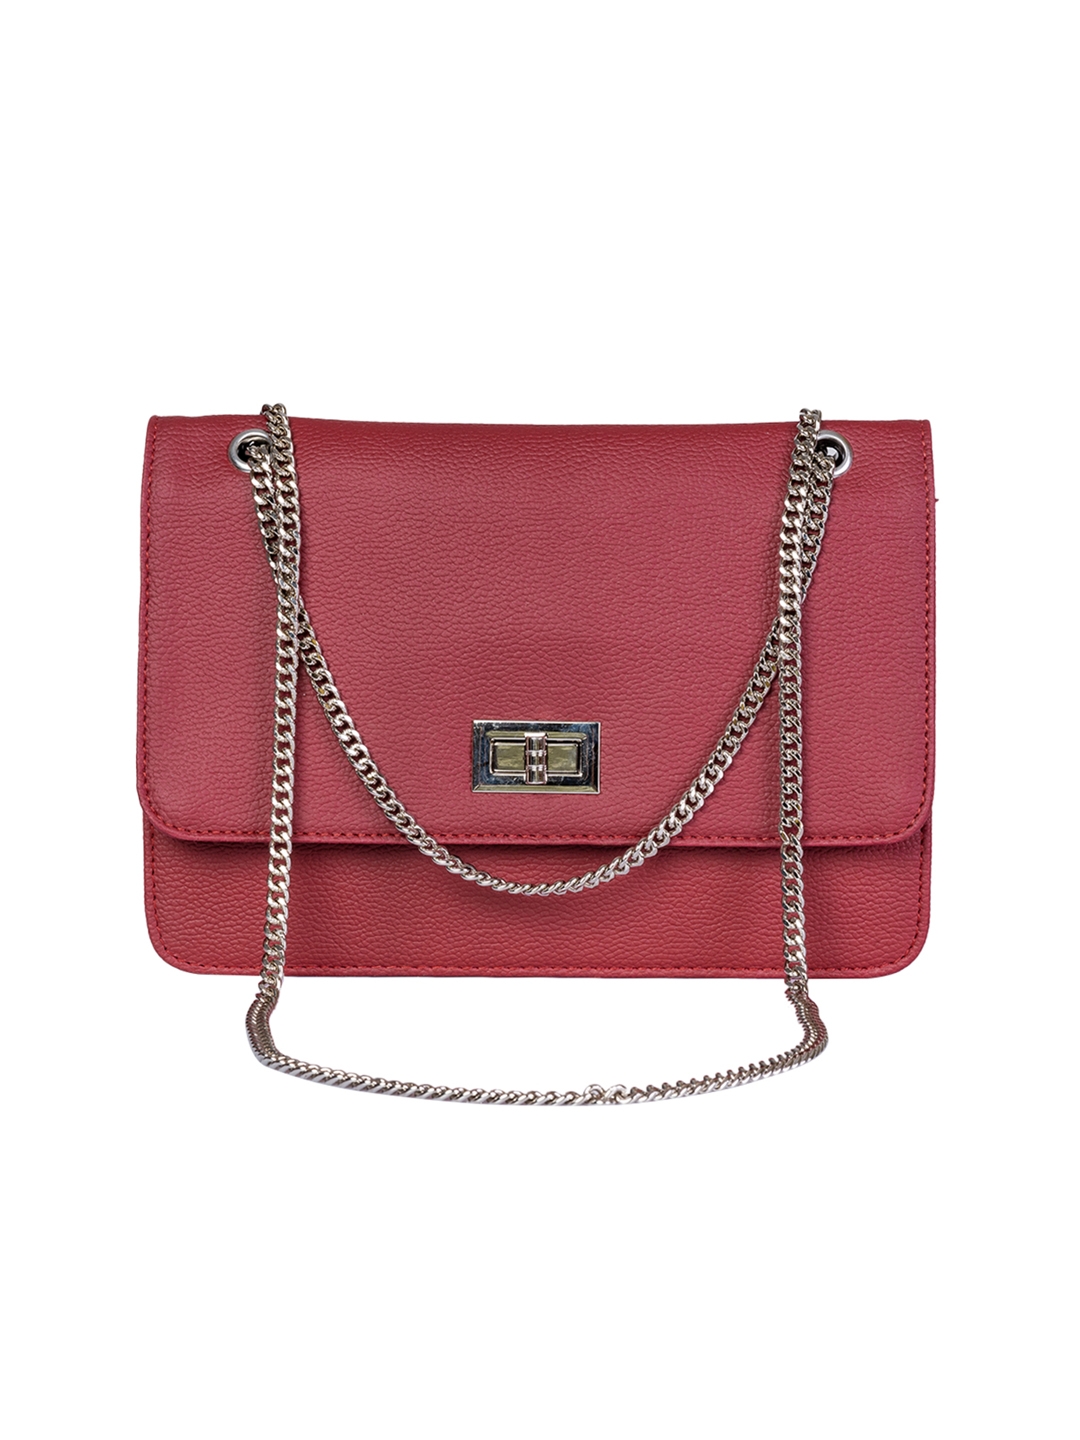 Buy Khadim's Women Tan Handbag - UK One Size at Amazon.in